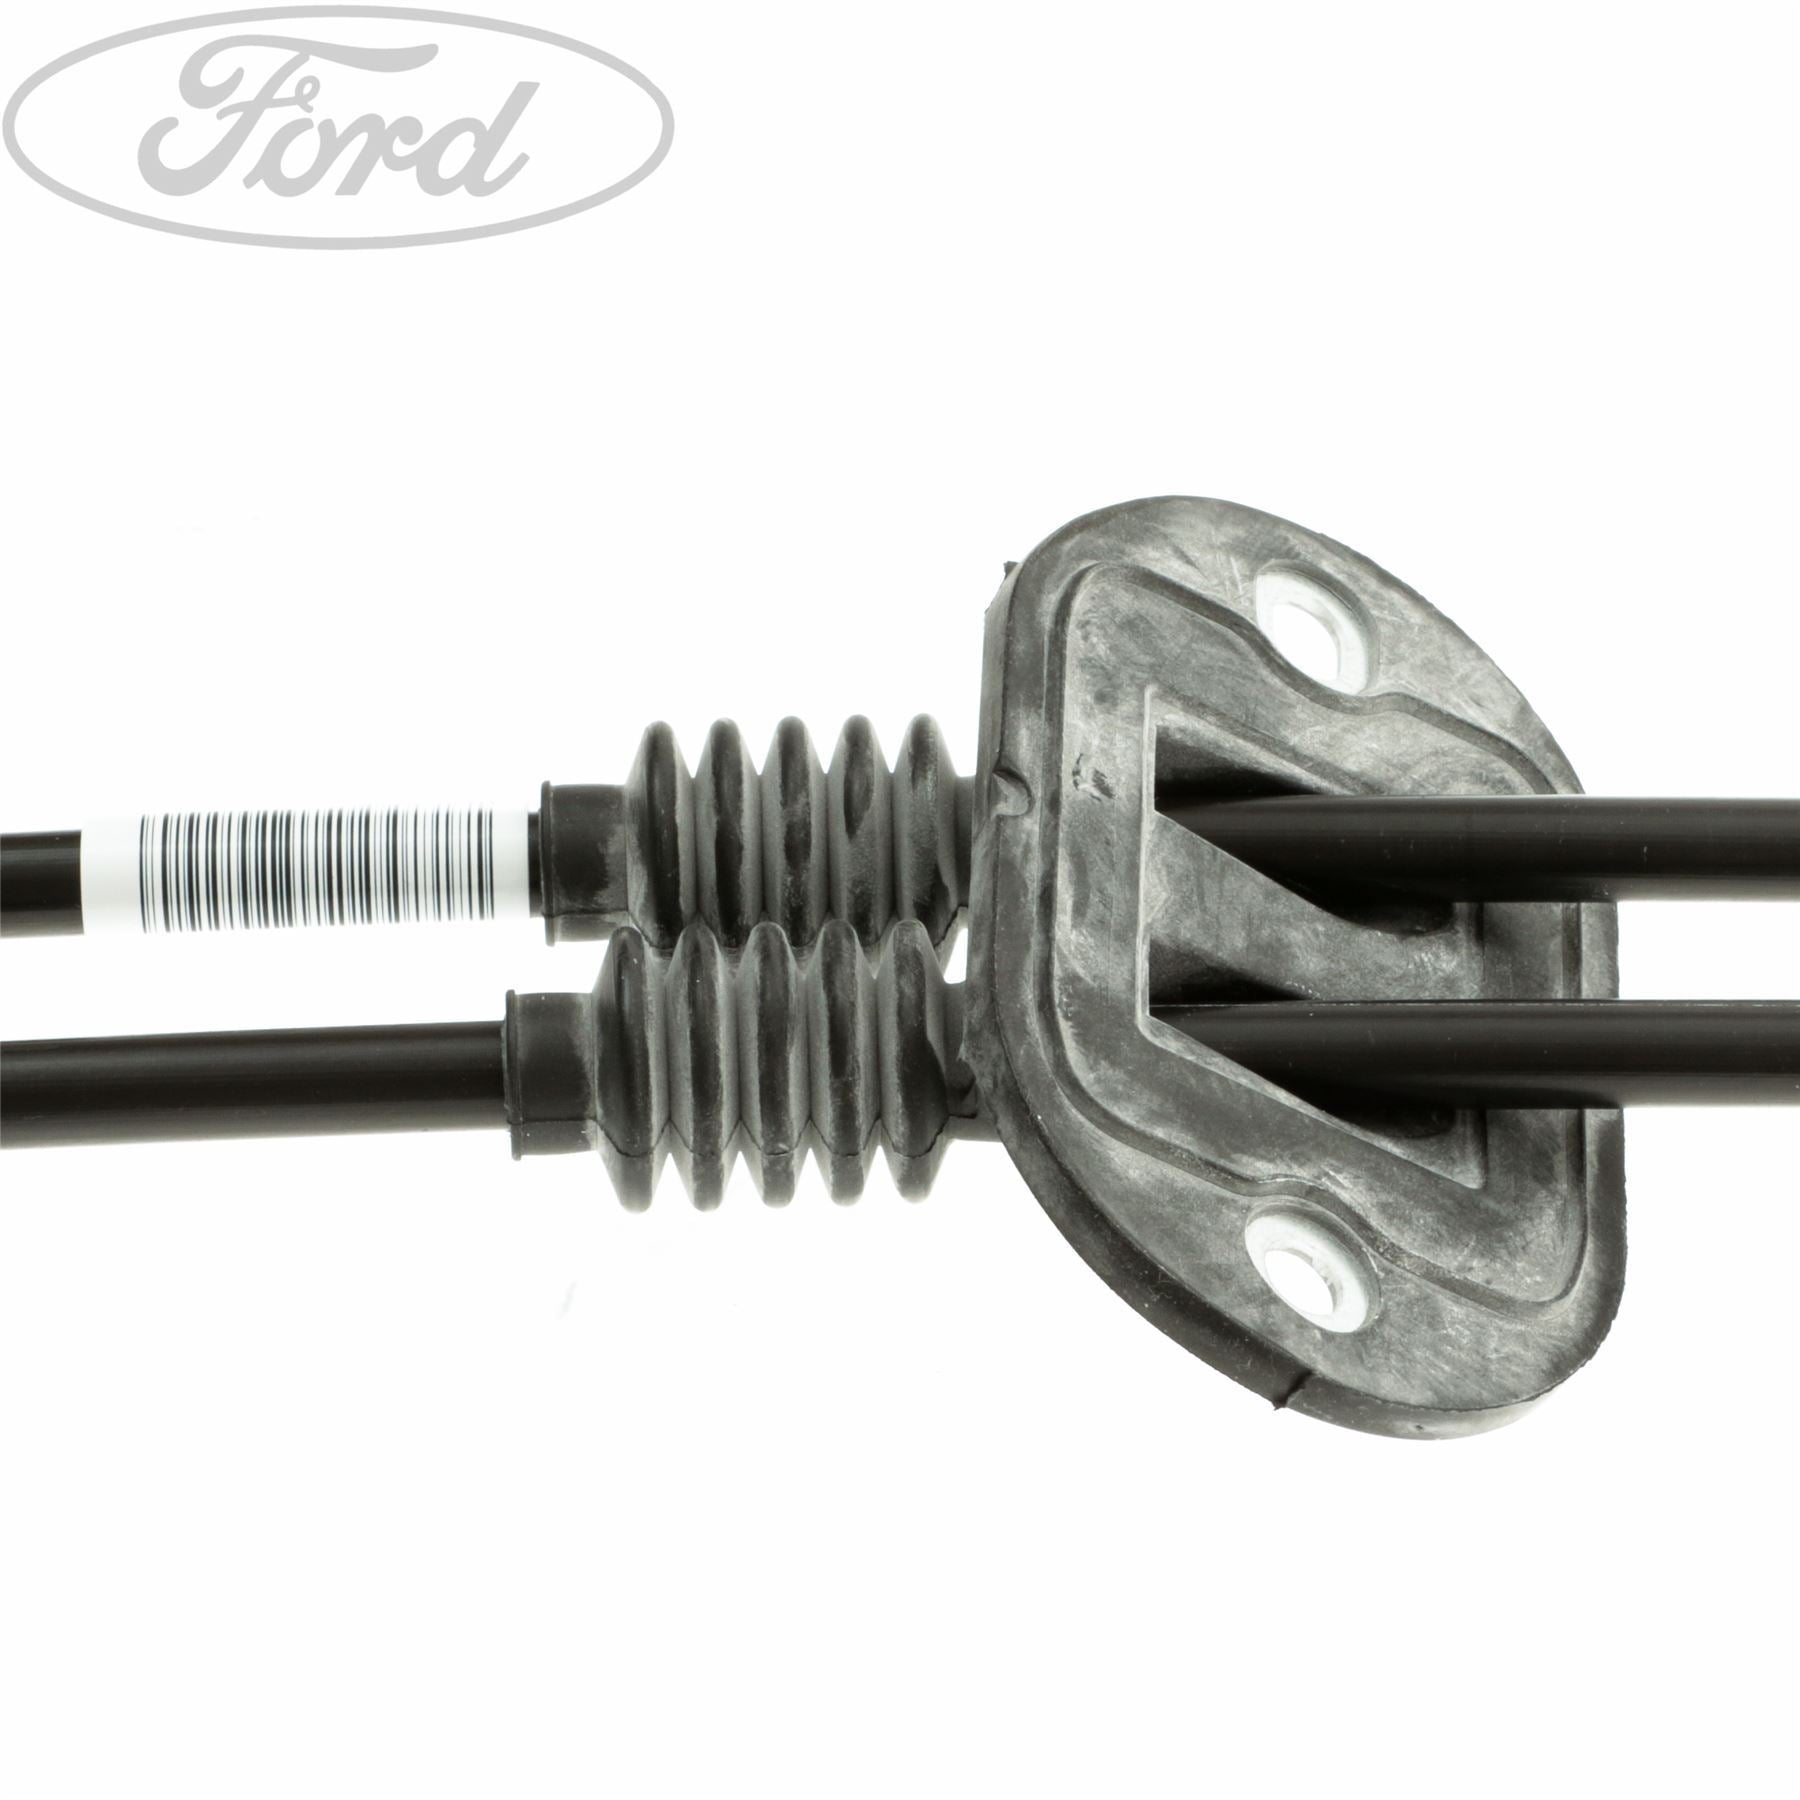 Ford Getriebe Ersatzteile, Getriebe für alle Ford Modelle, Seite 2